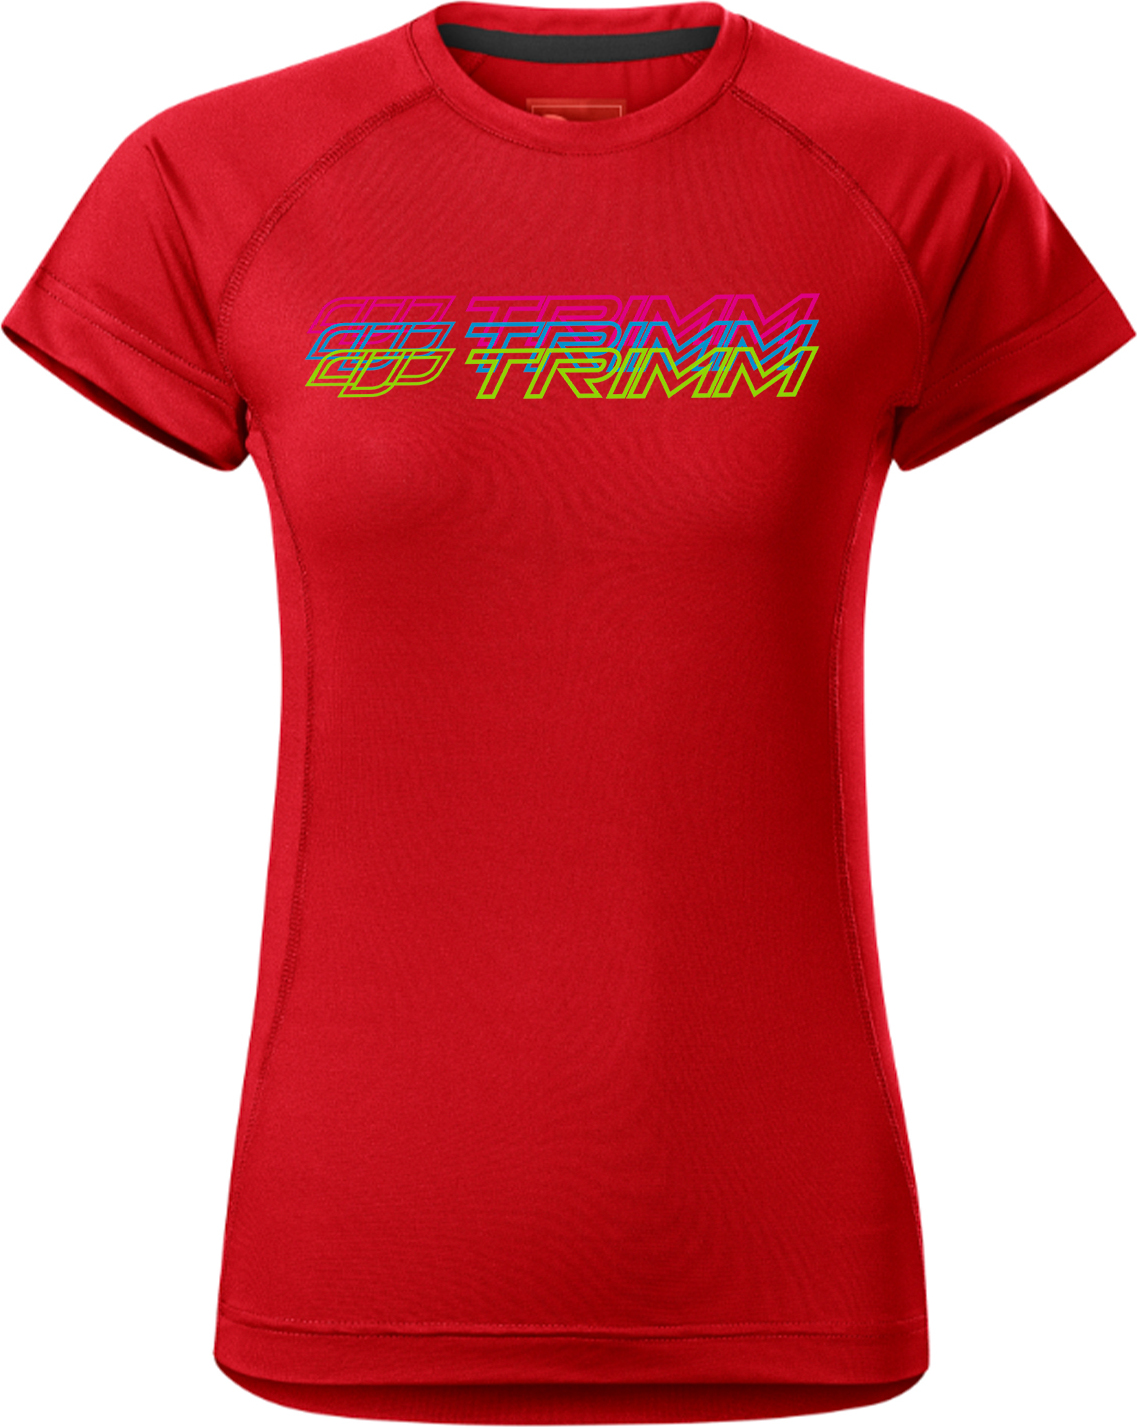 Dámské tričko TRIMM Destiny Lady červené Velikost: M, Barva: red